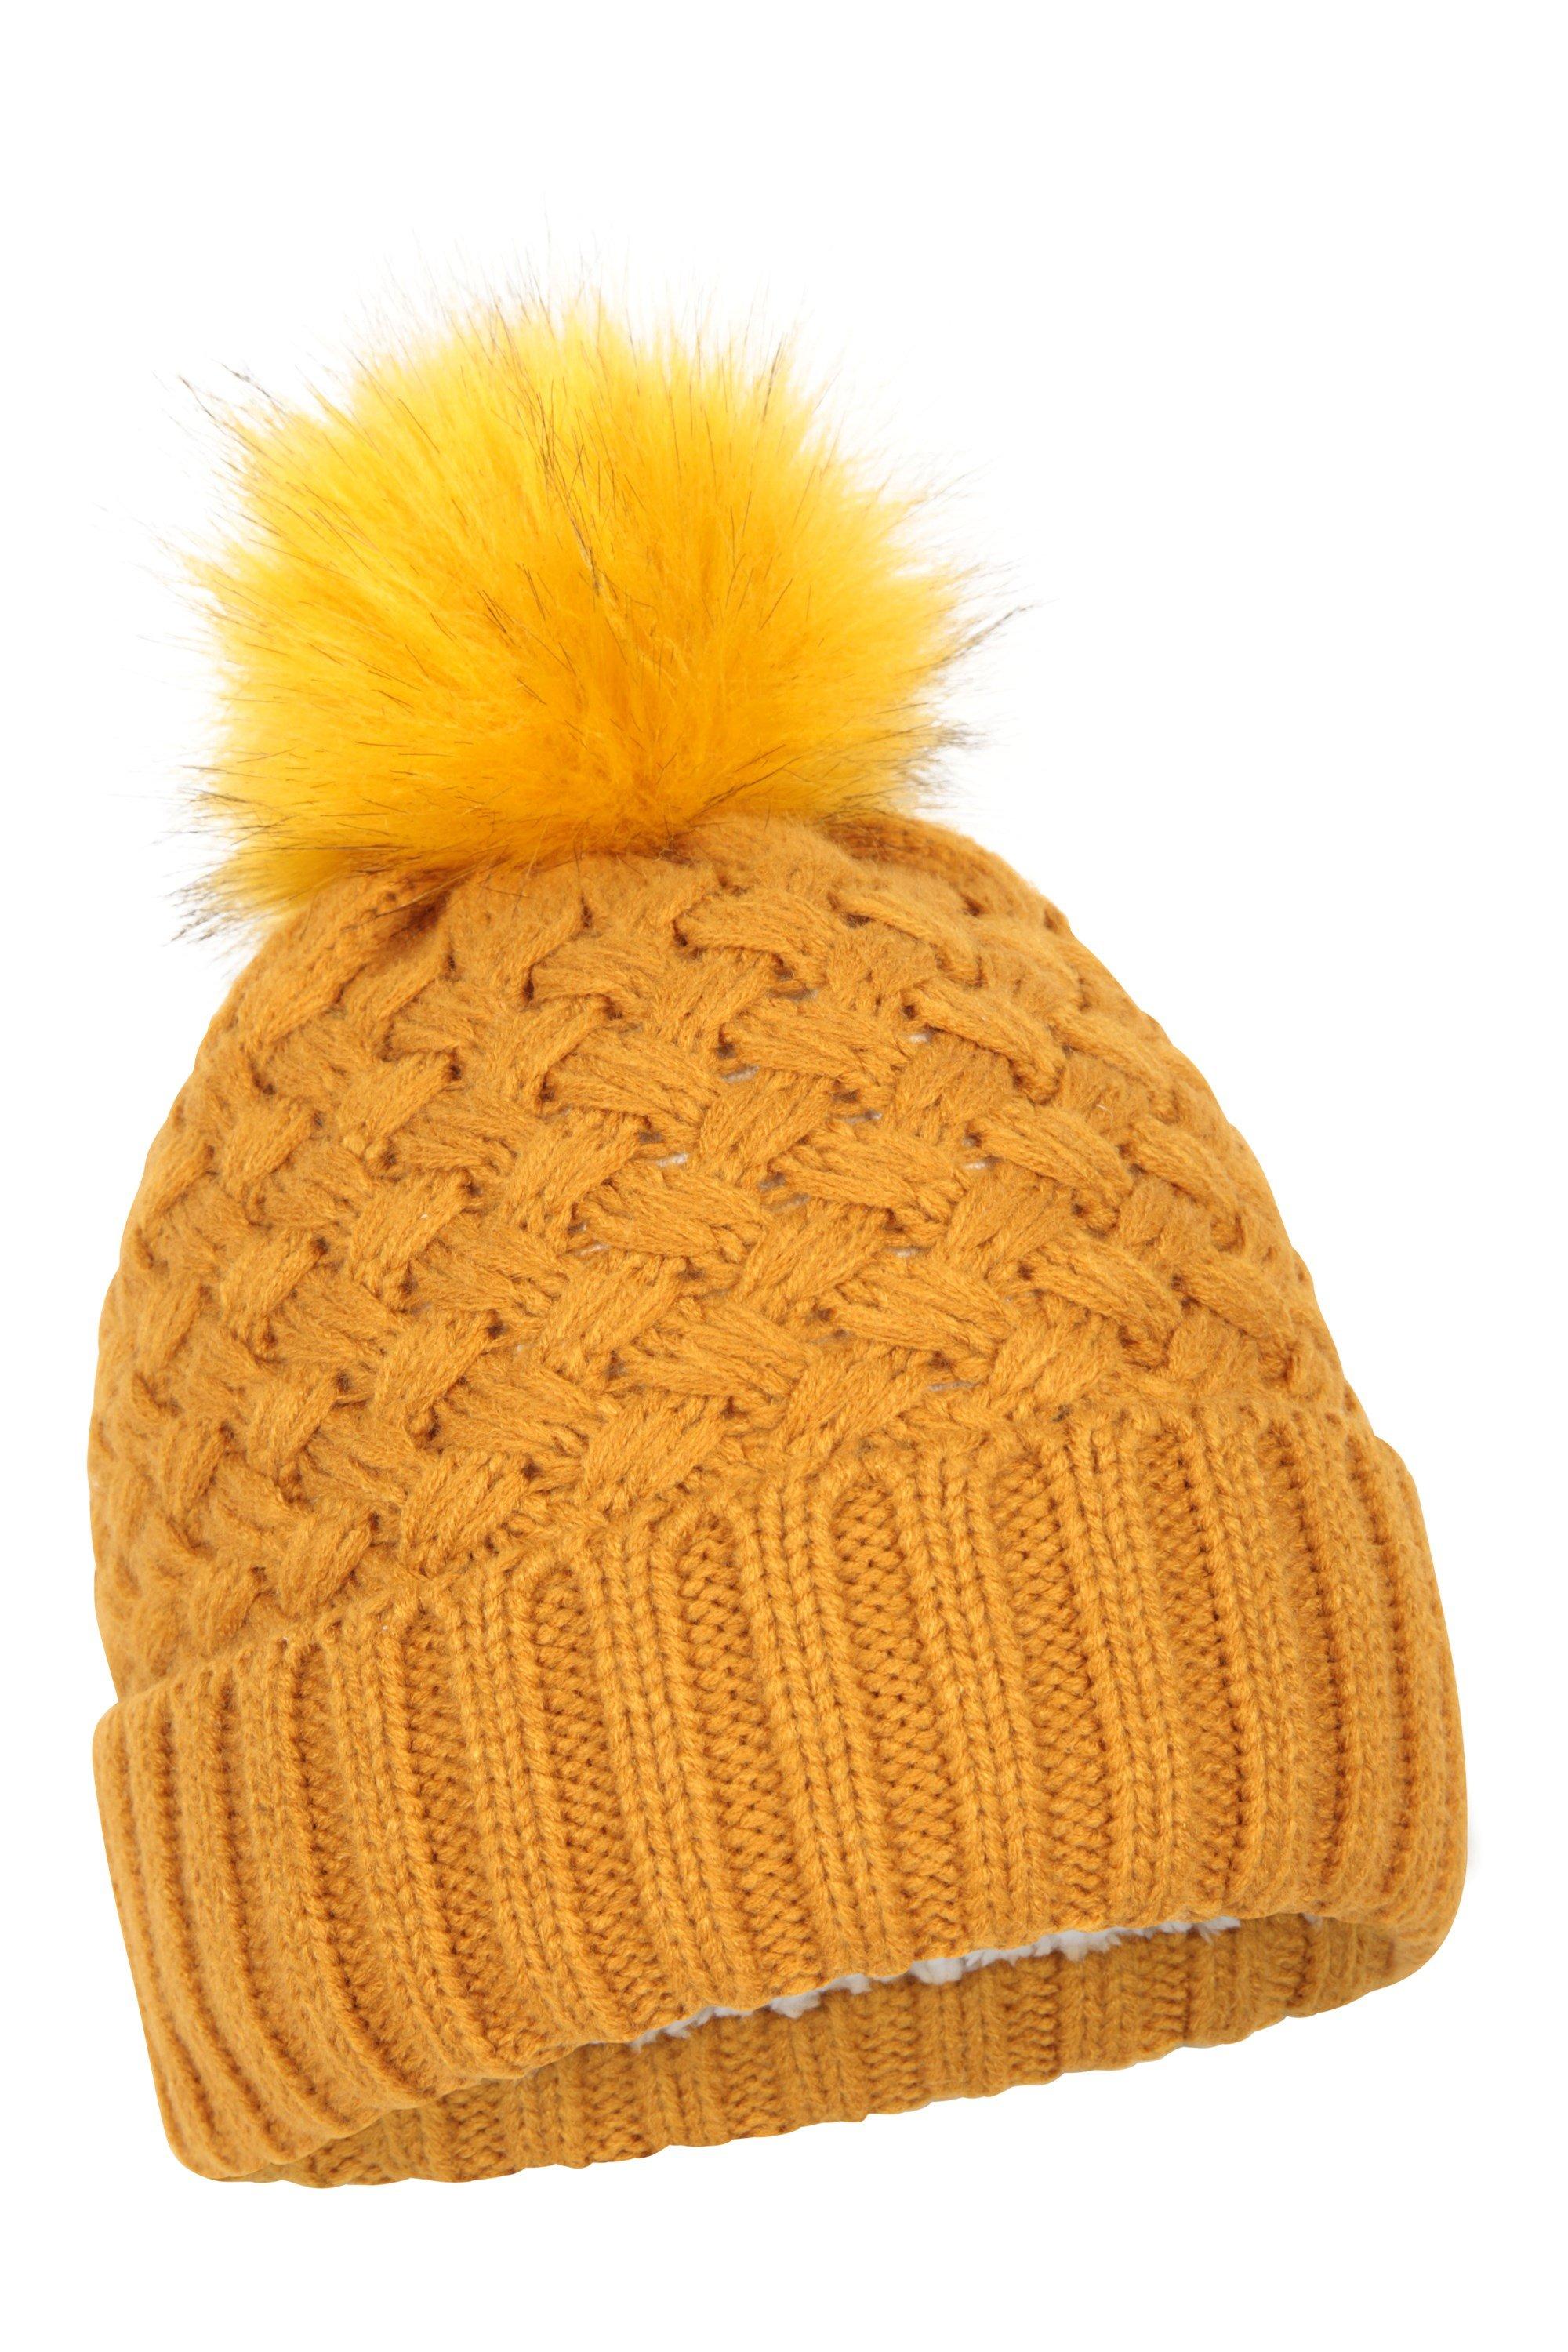 Зимняя лыжная шапка-бини с помпоном на меховой подкладке Mountain Warehouse, желтый шапка бини женская крупной вязки цвет – молочный